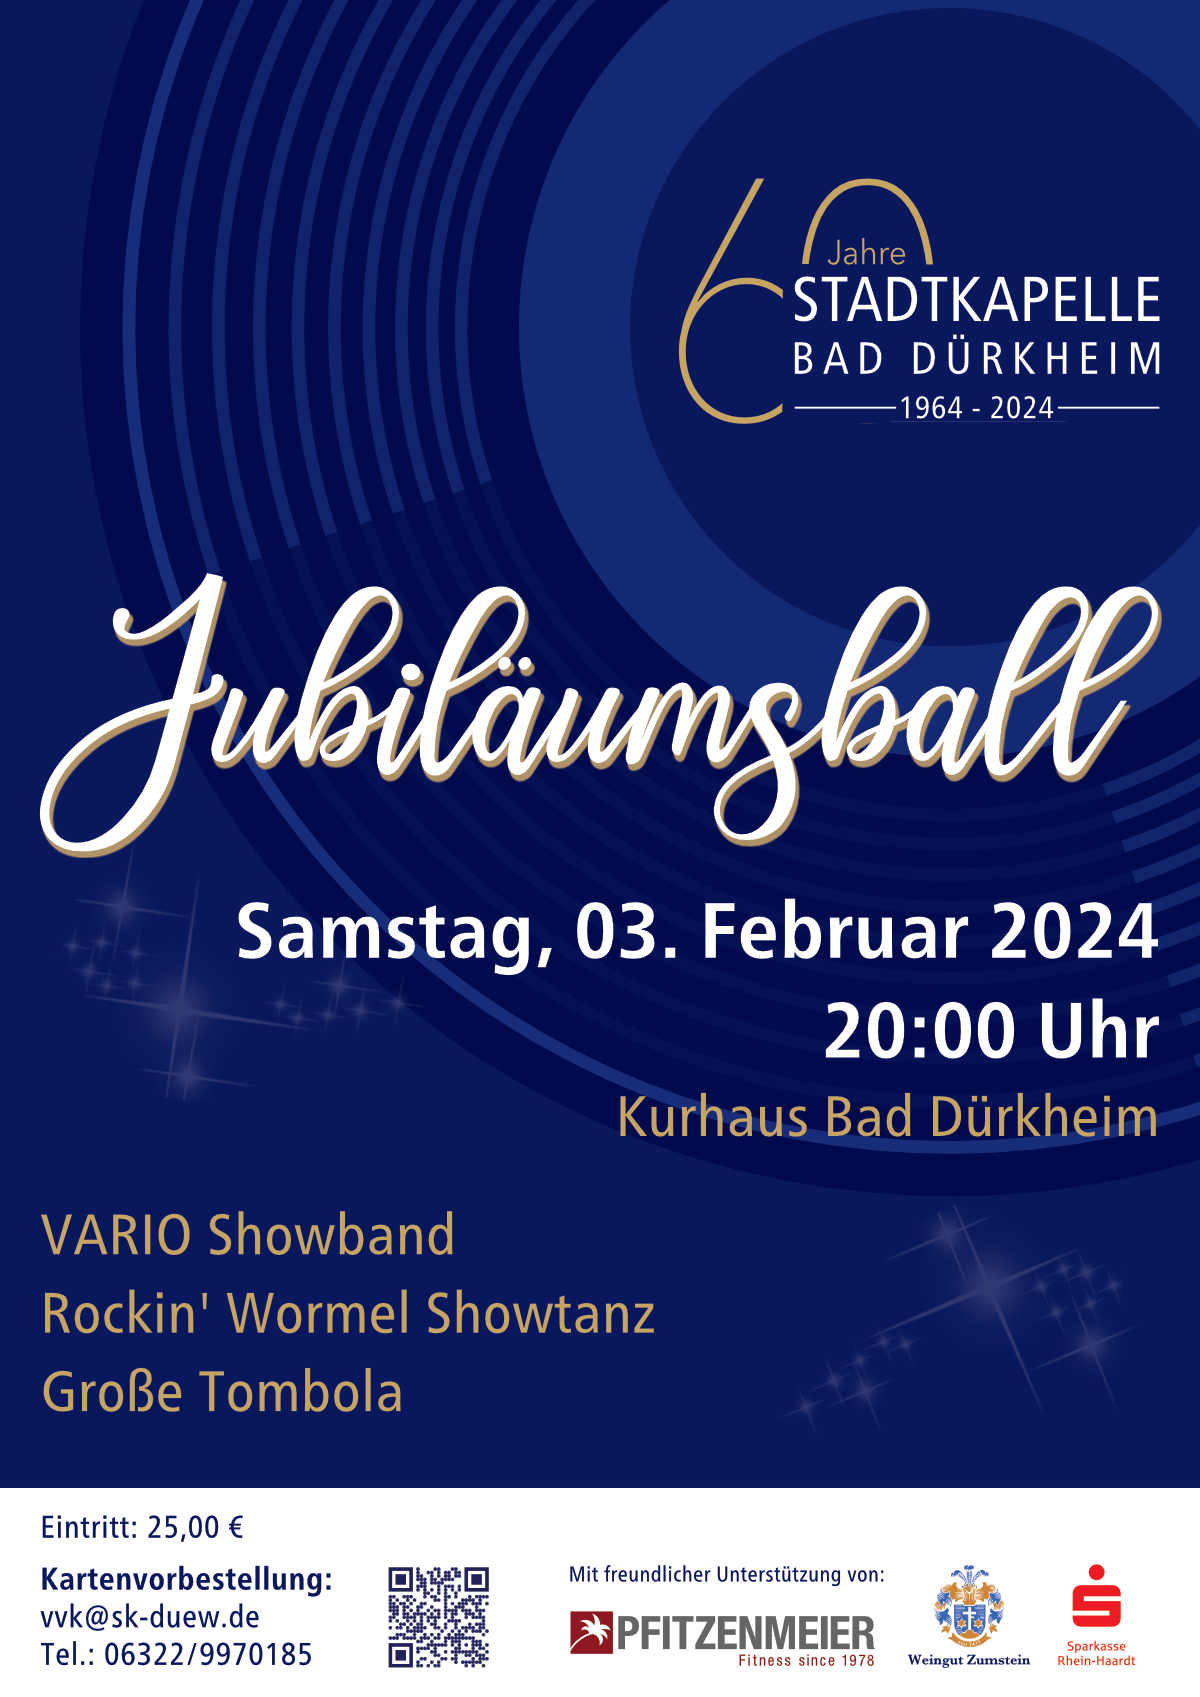 Wir werden 60 Jahre alt! - Jubiläumsball am Samstag, 03. Februar 2024 im Kurhaus Bad Dürkheim